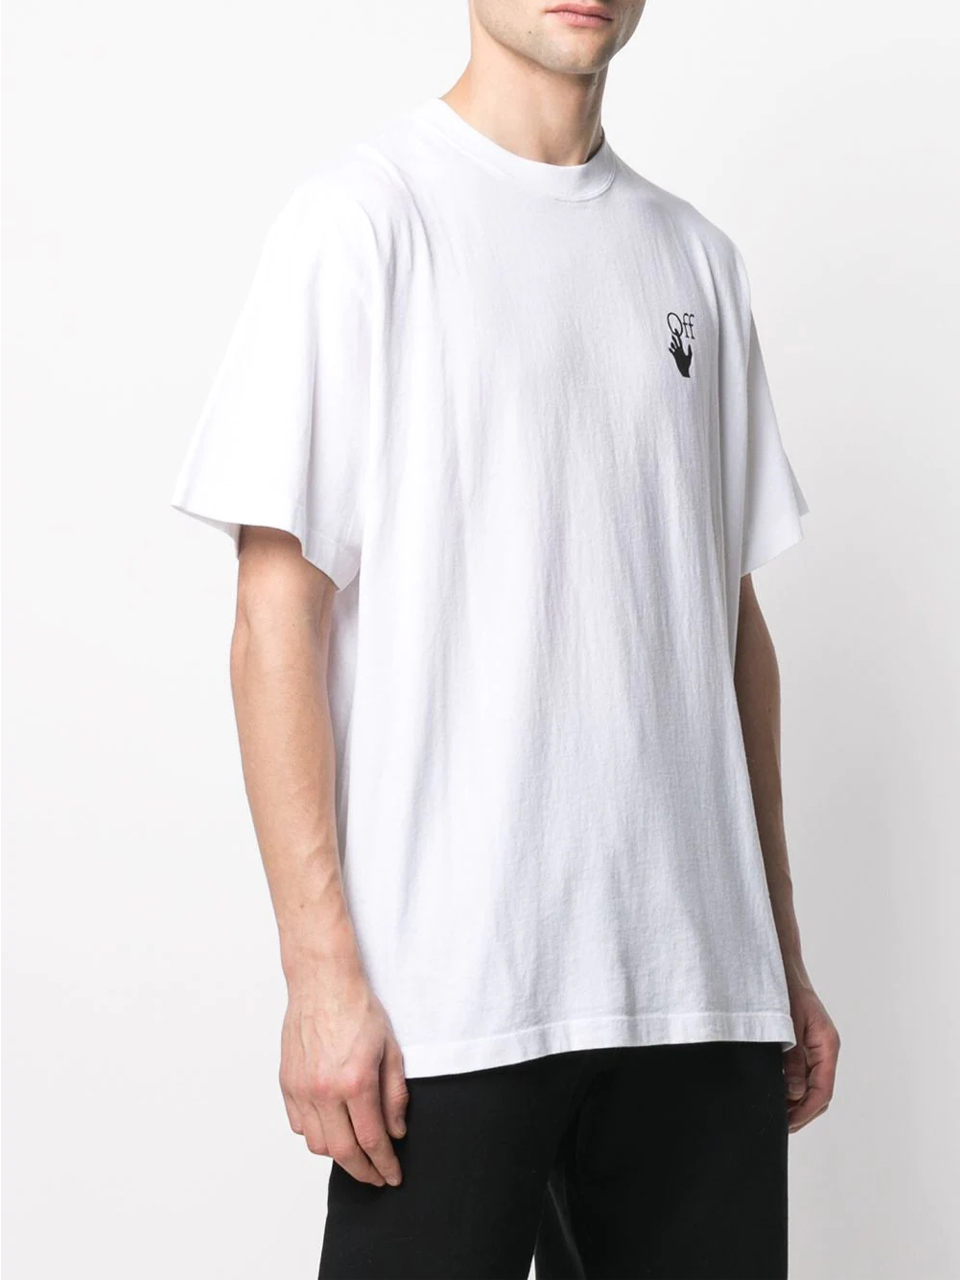 Imagem de: Camiseta Off-White Branca com Estampa Setas Riscadas